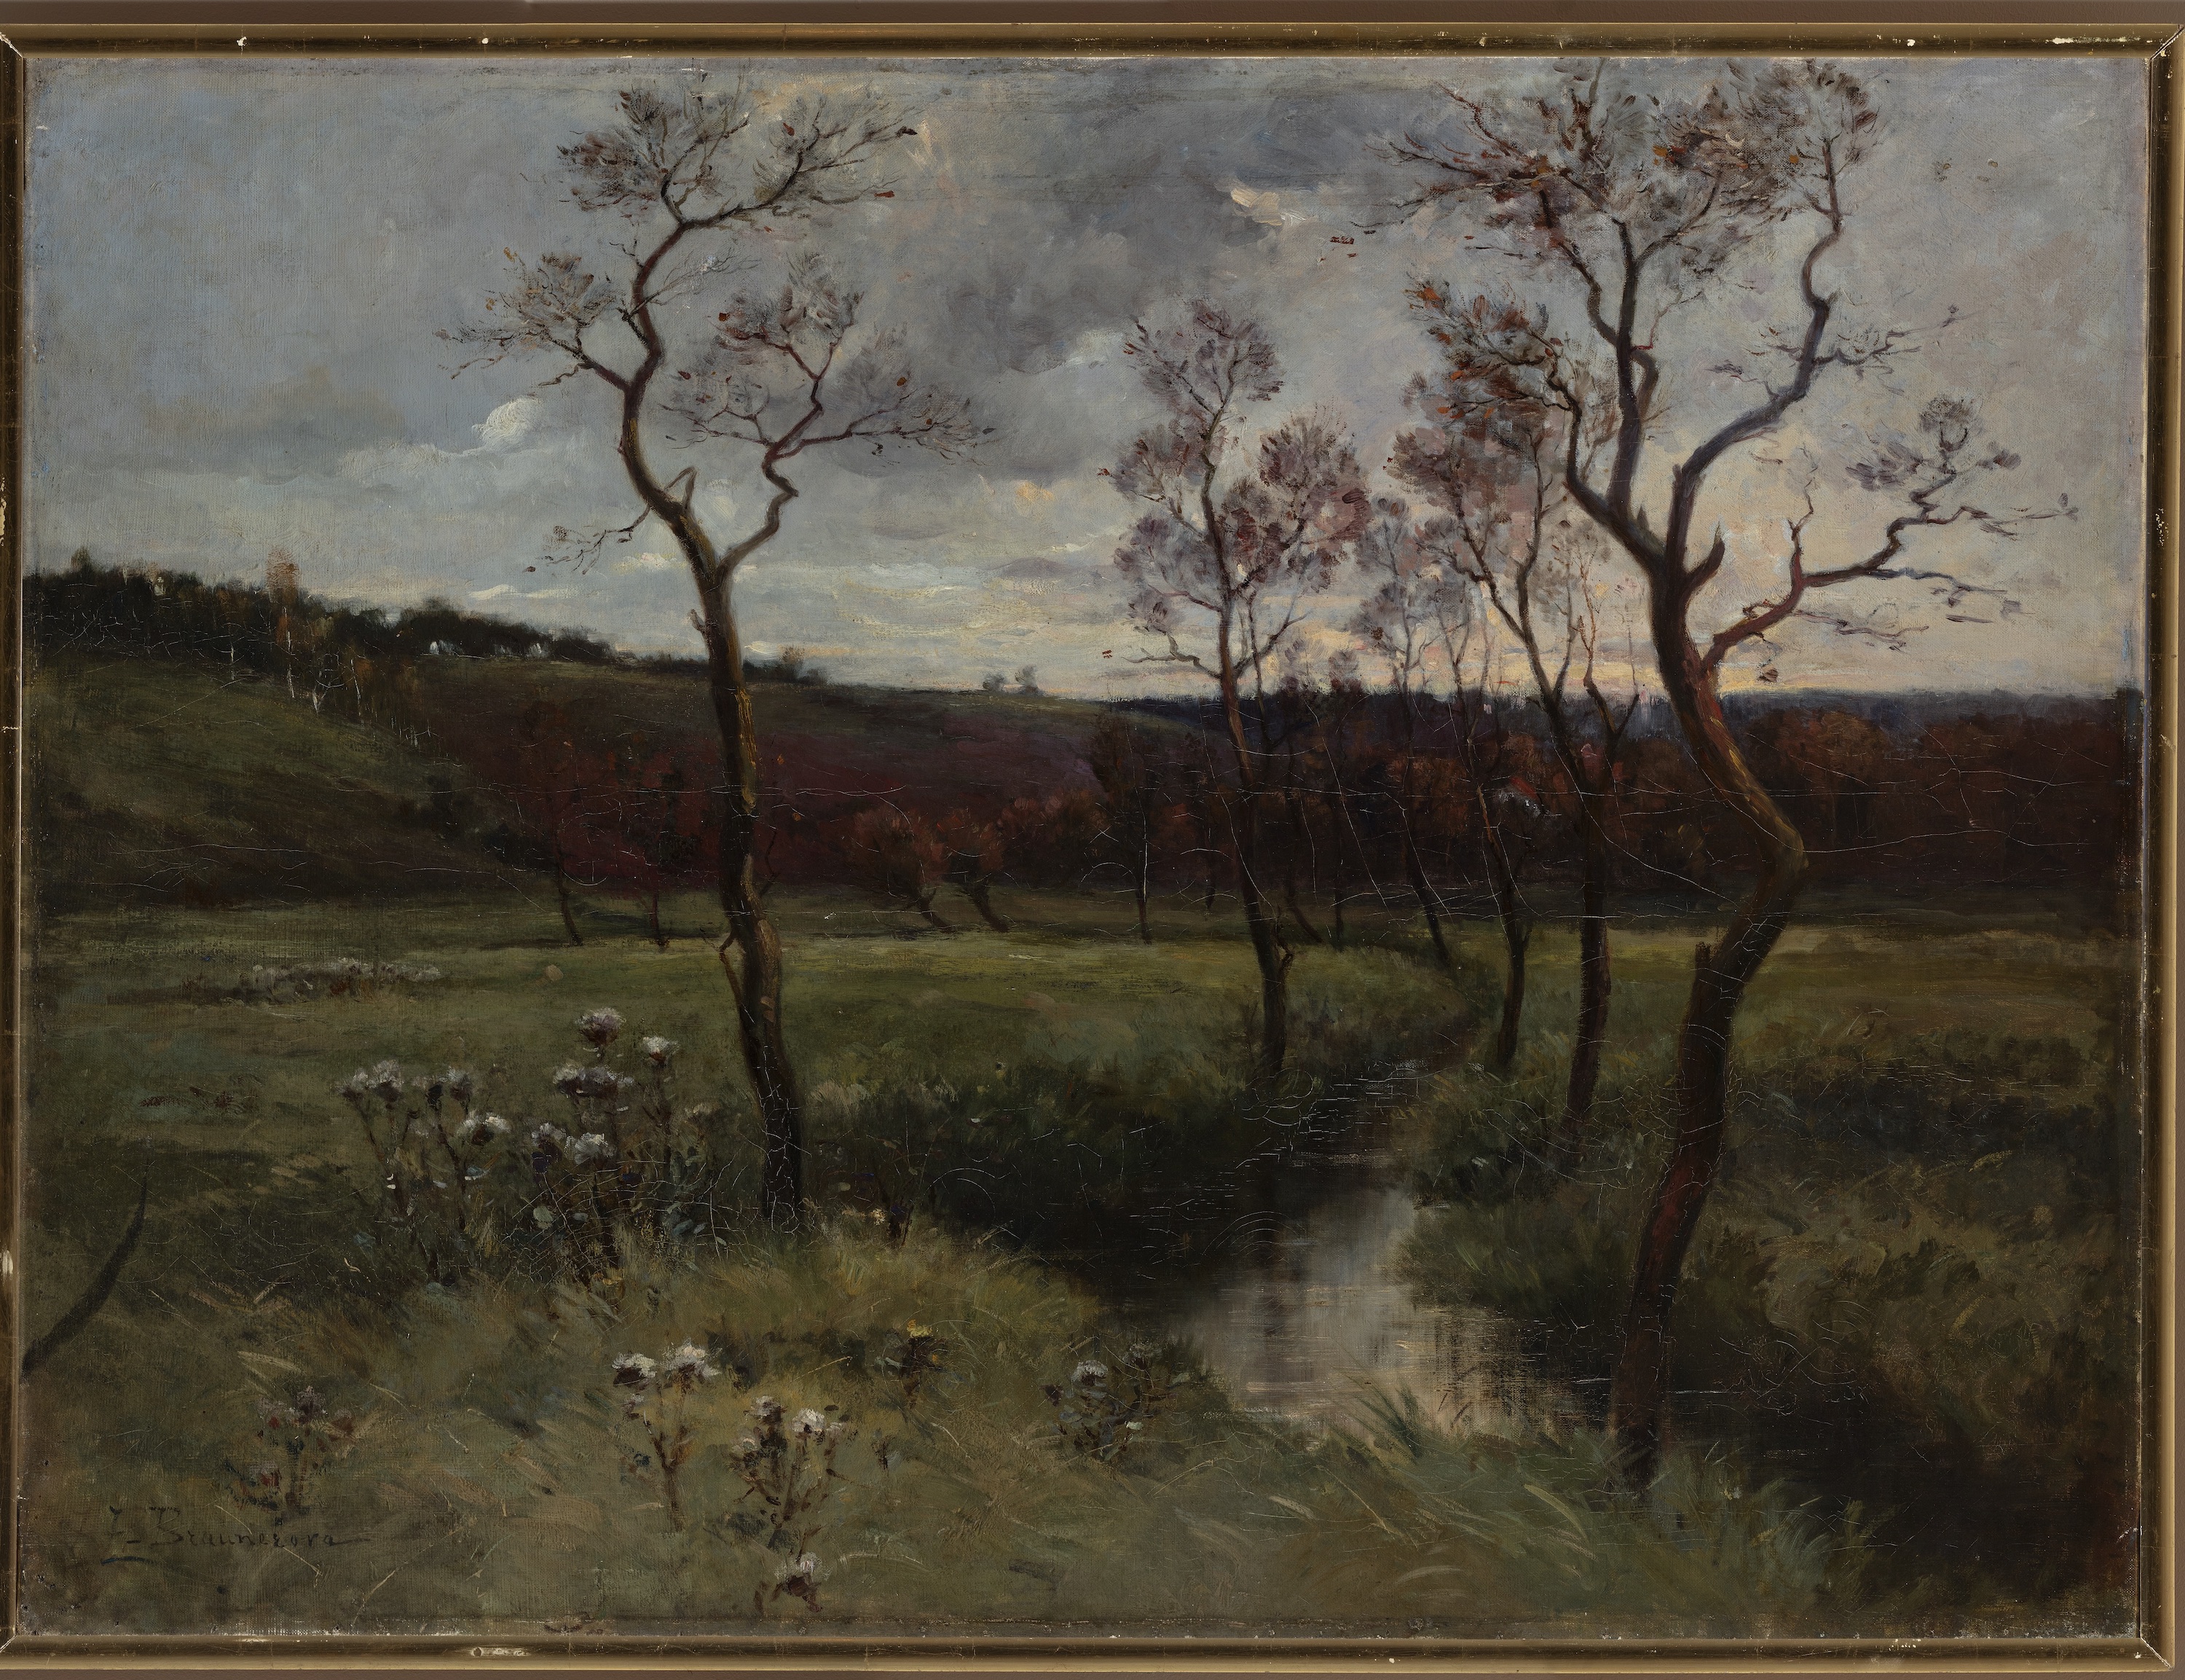 ロツトキーの静かなる渓谷 by Zdenka Braunerová - 1886年頃 - 83 x 110 cm 